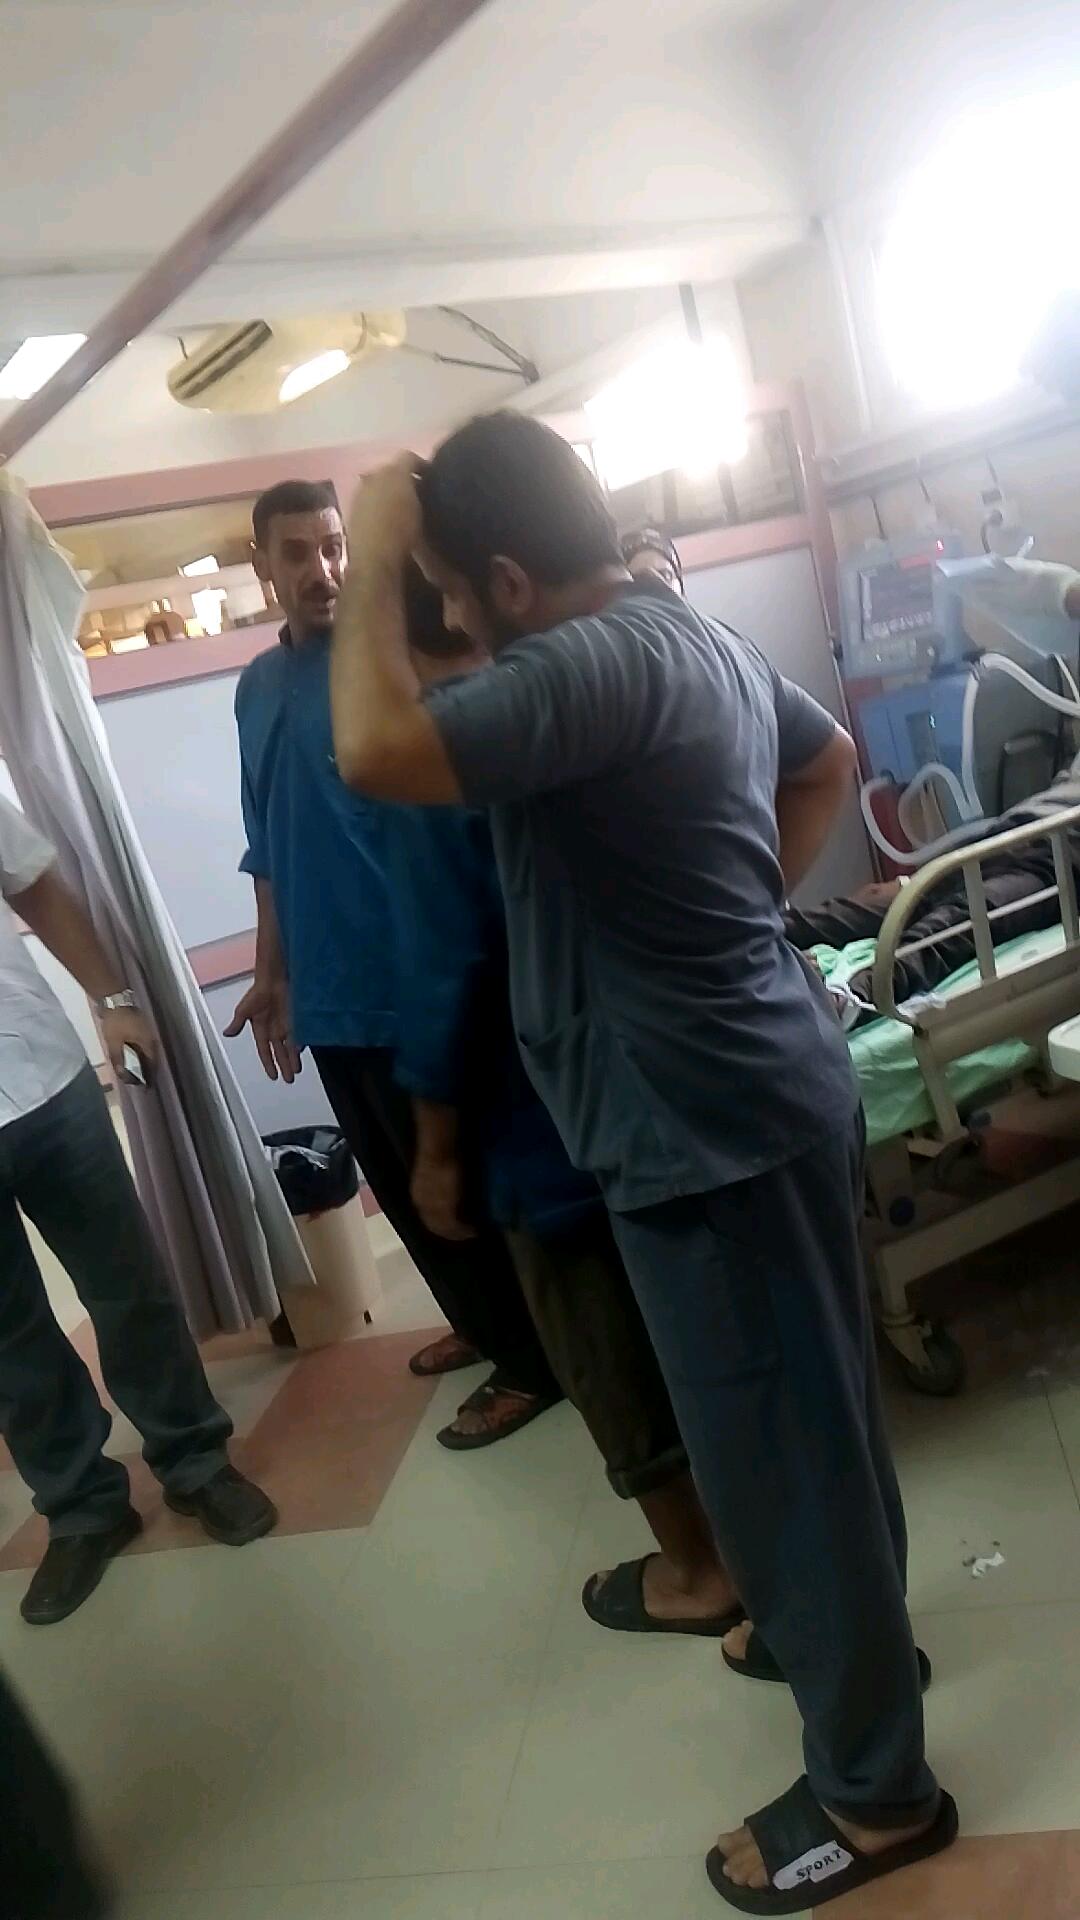 وصول 6 من ضحايا الغسيل الكلوي بمستشفي ديرب نجم لعناية مستشفى جامعة الزقازيق (6)